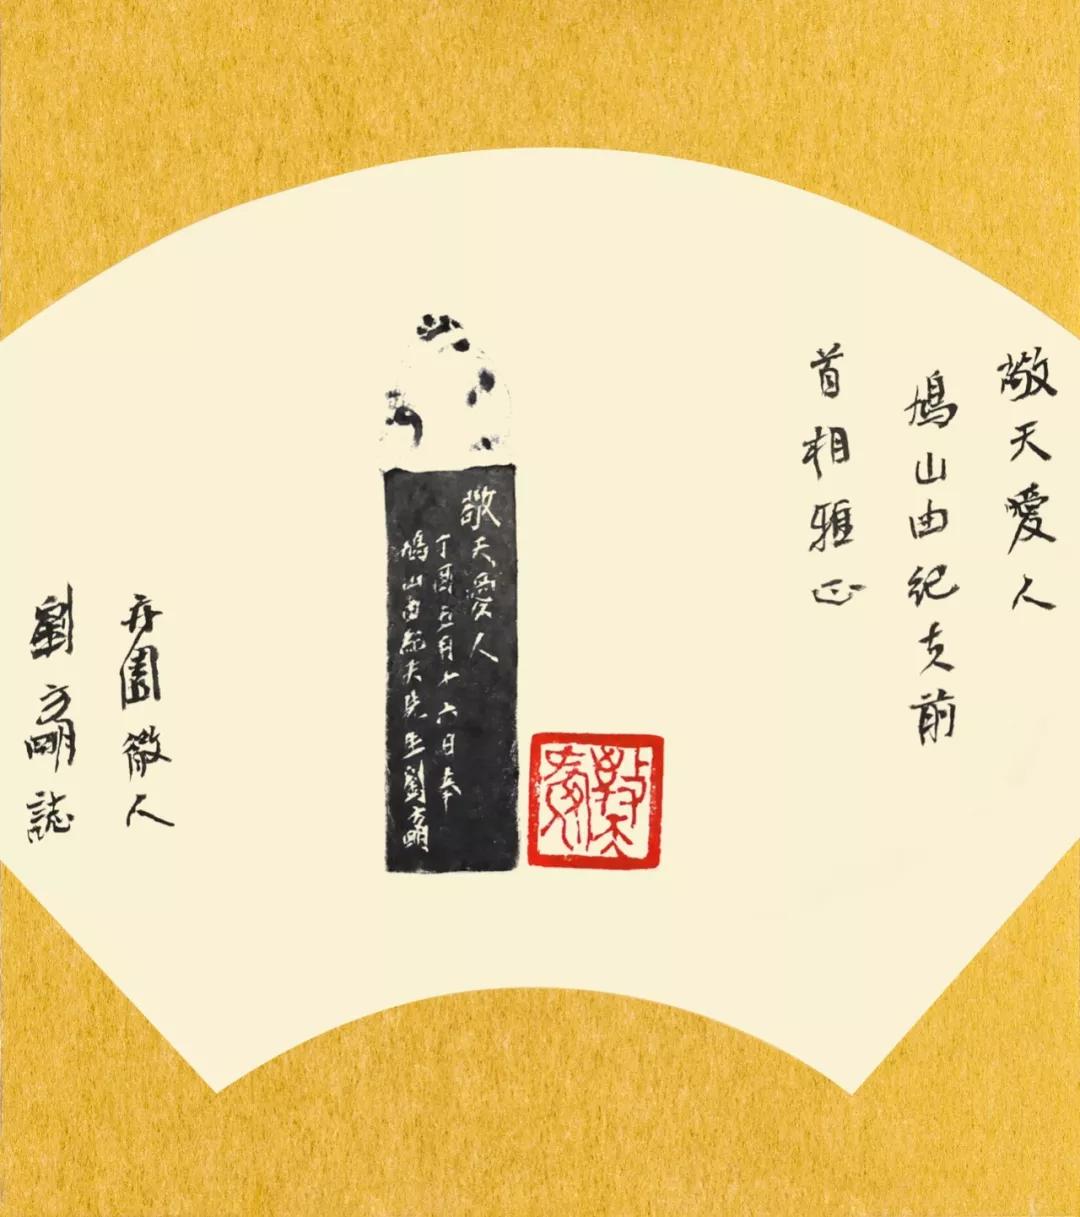 “传古不奴——刘方明诗书画印作品展”即将在京举行